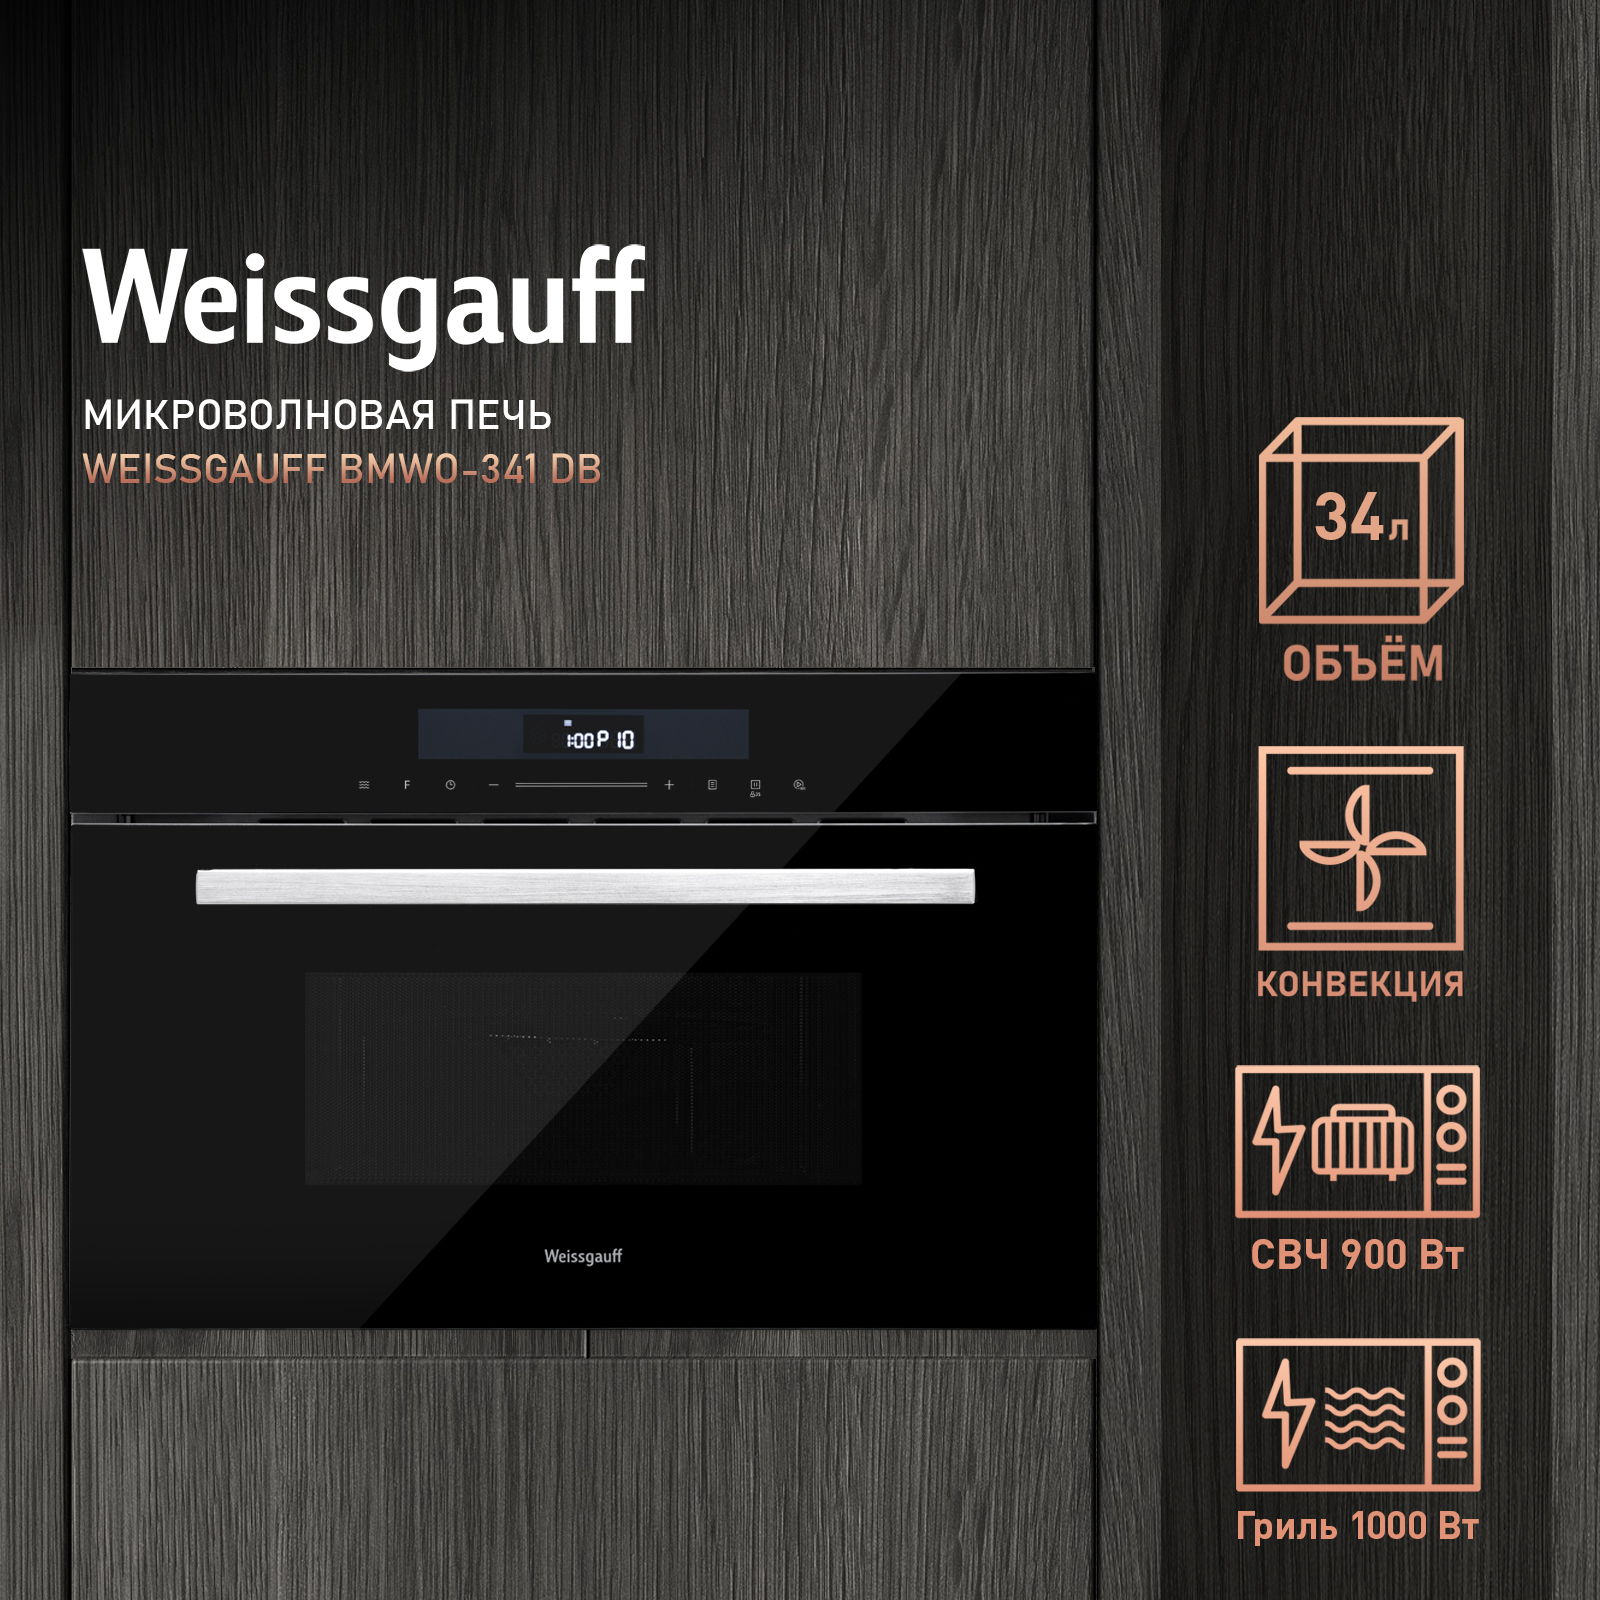 Встраиваемая микроволновая печь Weissgauff BMWO-341 DB Black Edition черная микроволновая печь с грилем weissgauff bmwo 209 pdb